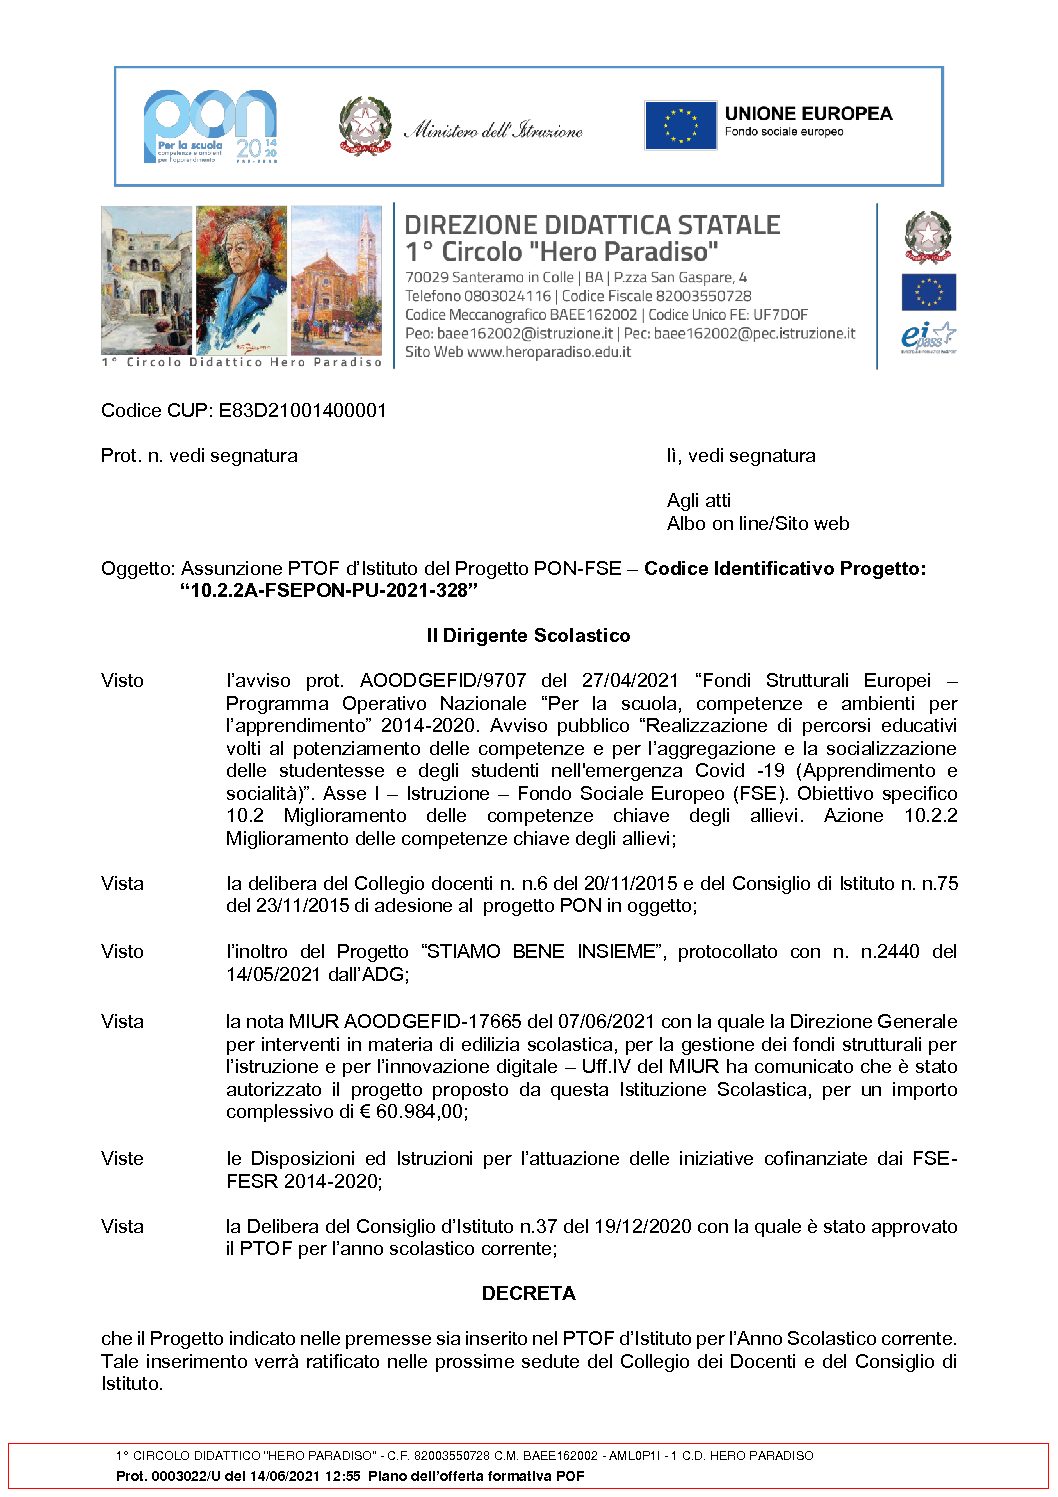 Decreto_assunzione_PTOF_PON_2021-328.pdf.pades